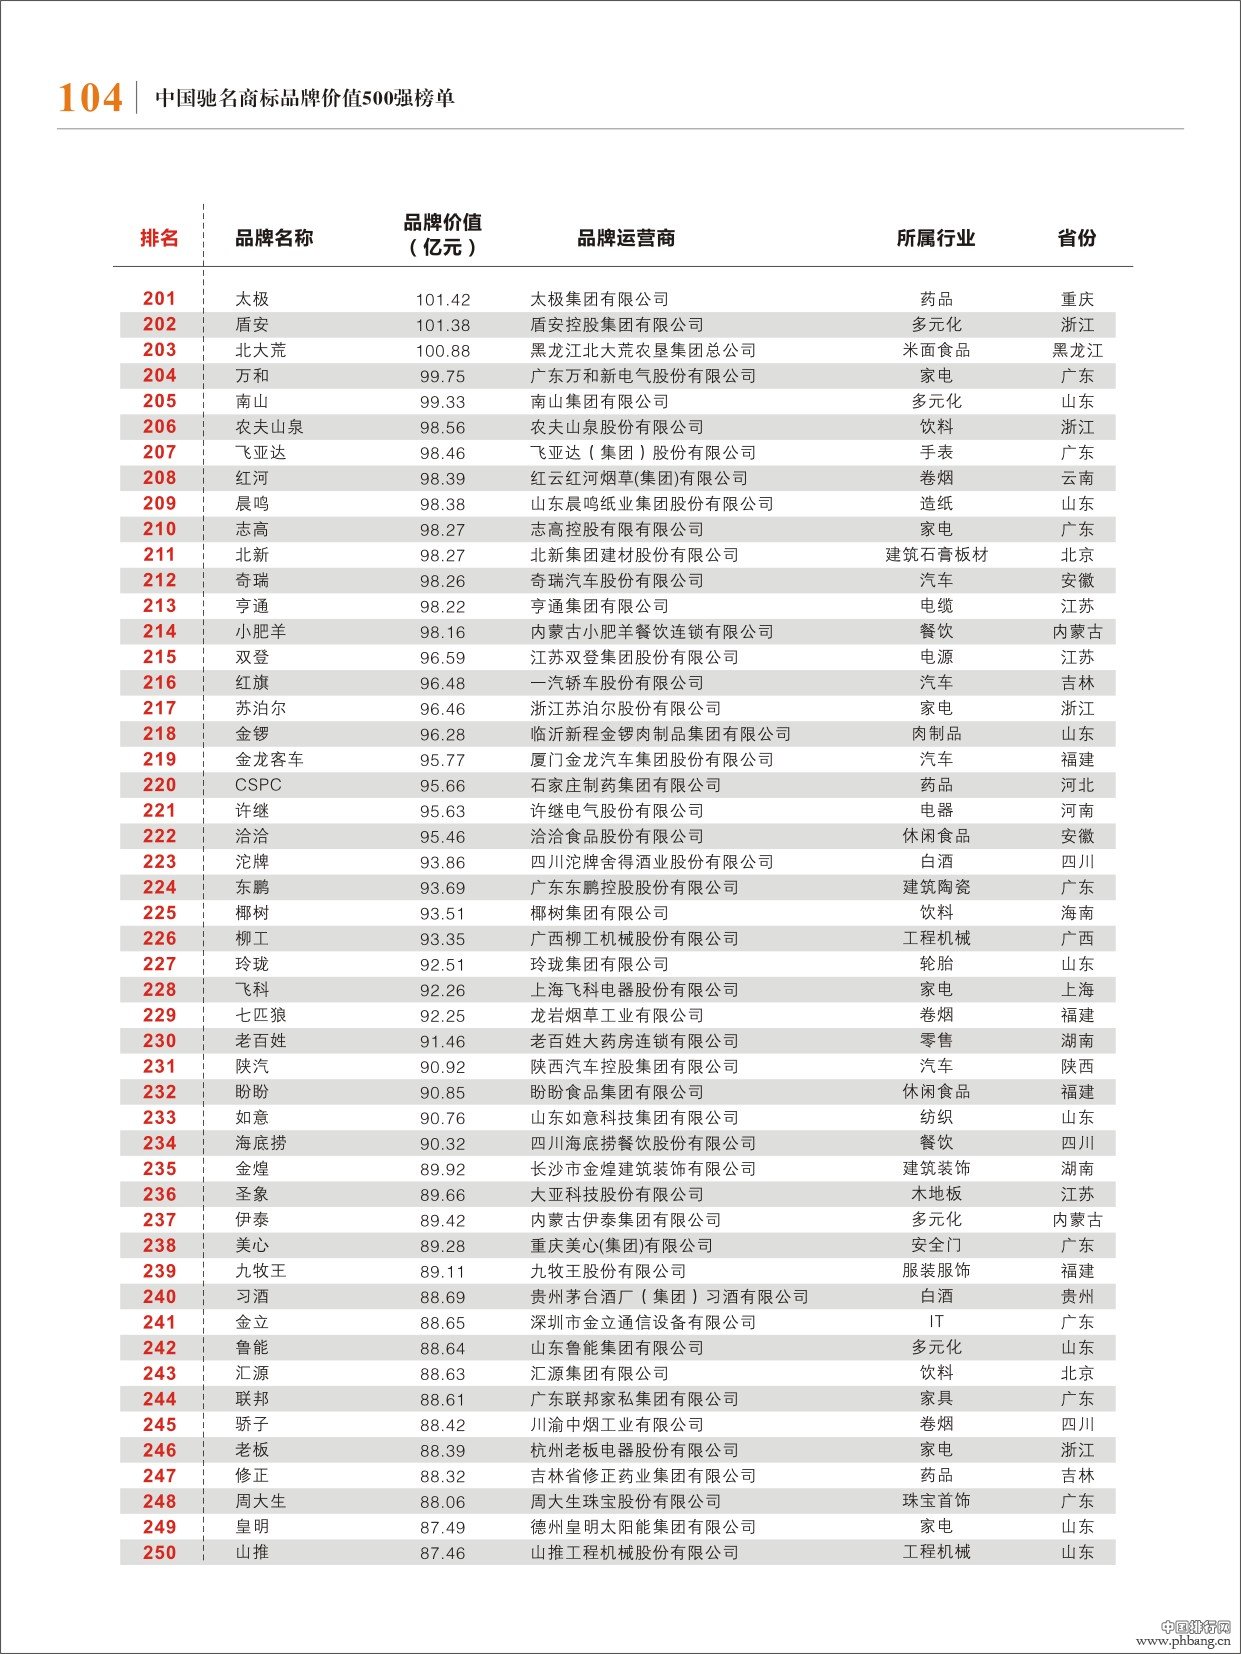 2013年中国驰名商标500强排名